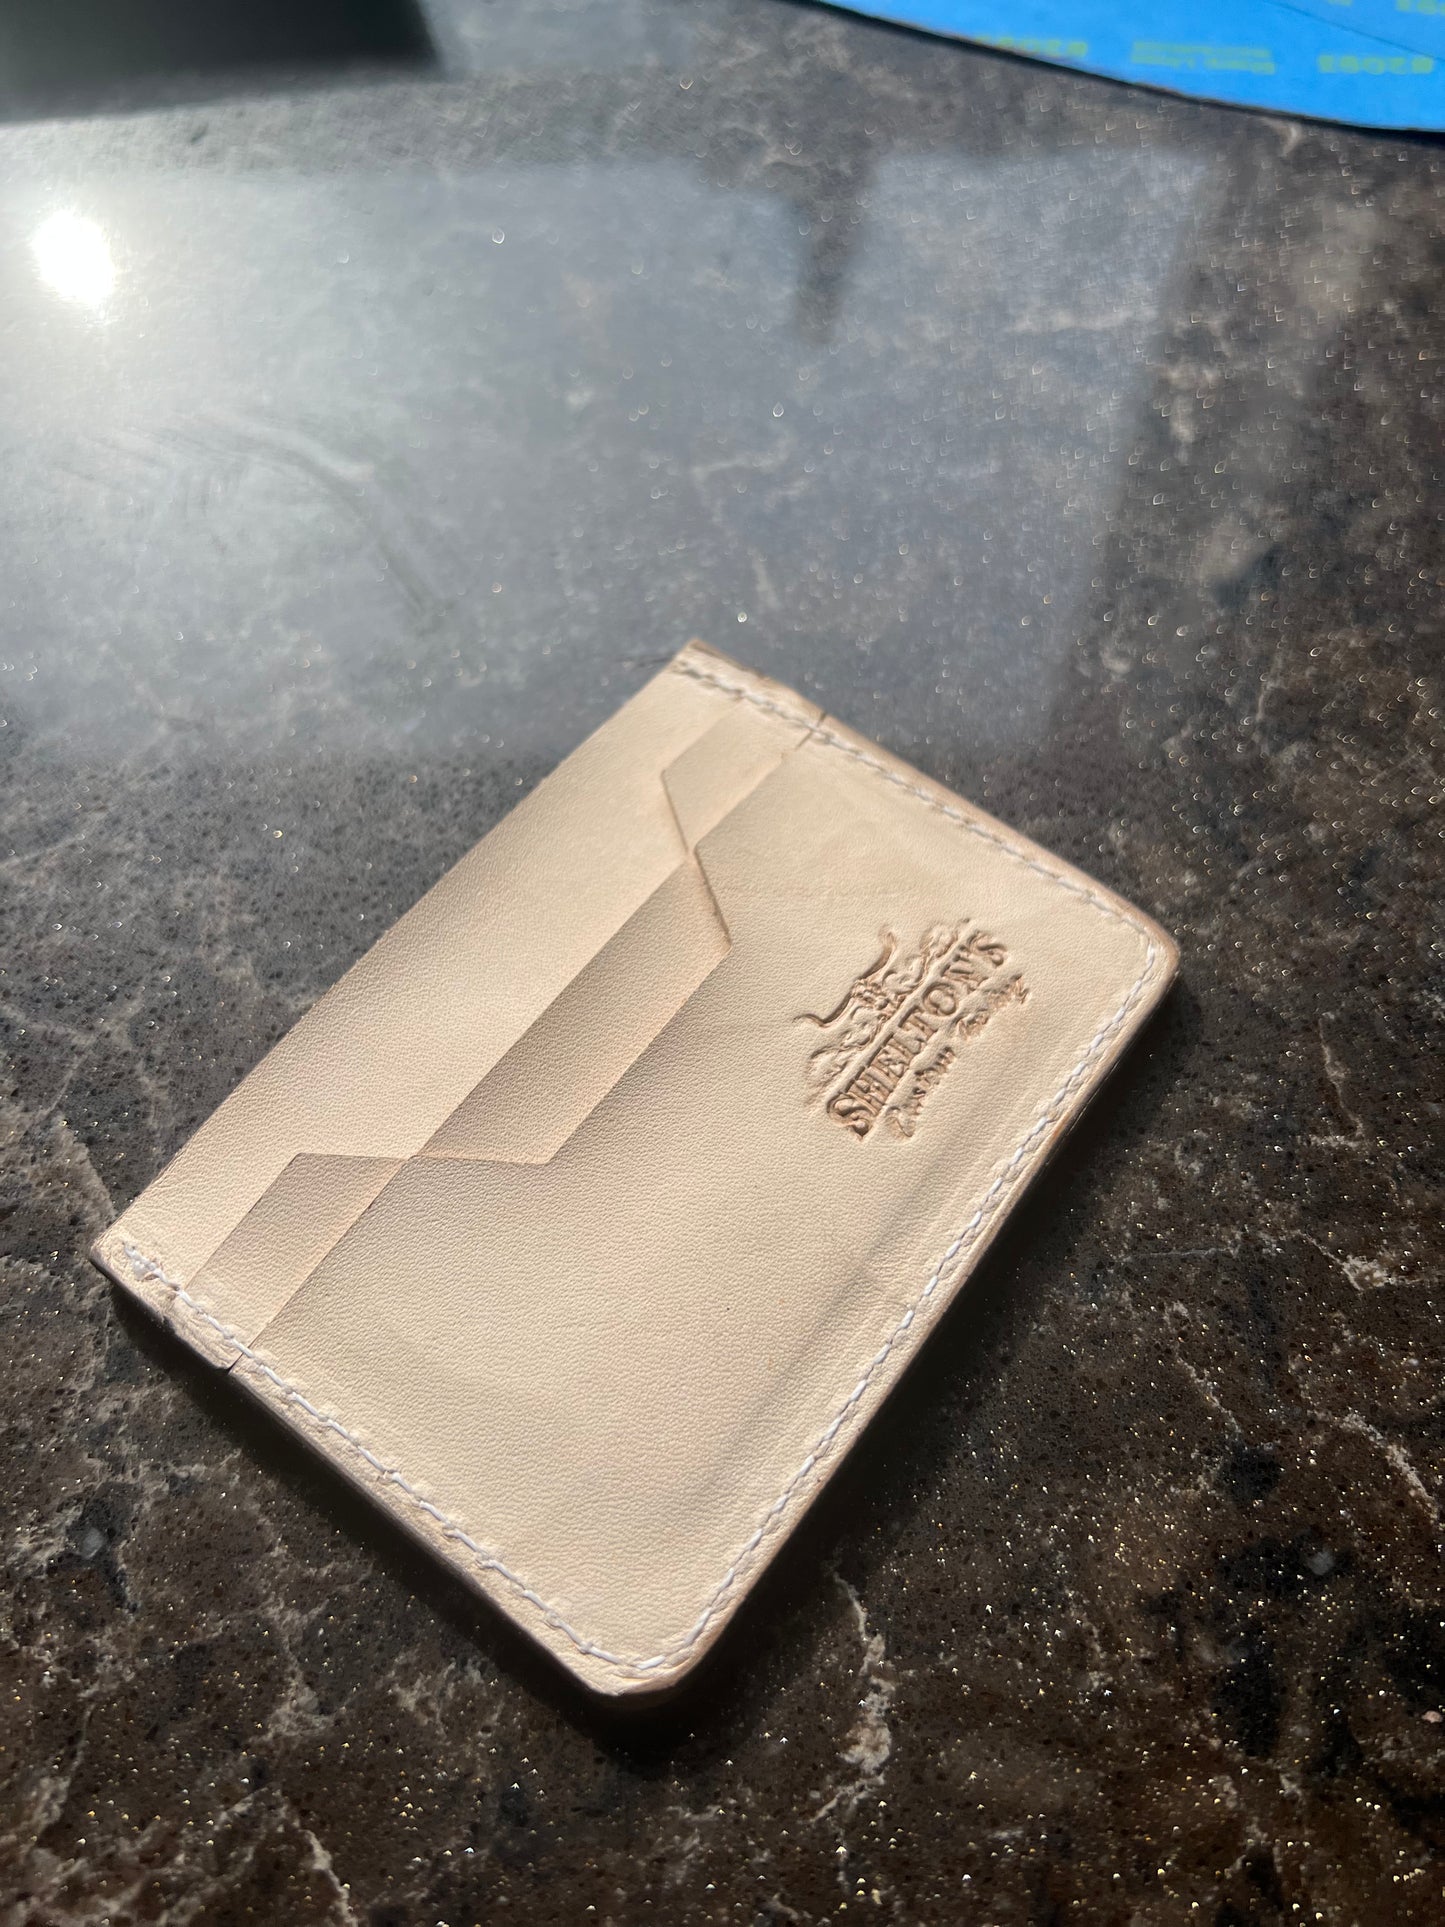 Custom card wallet